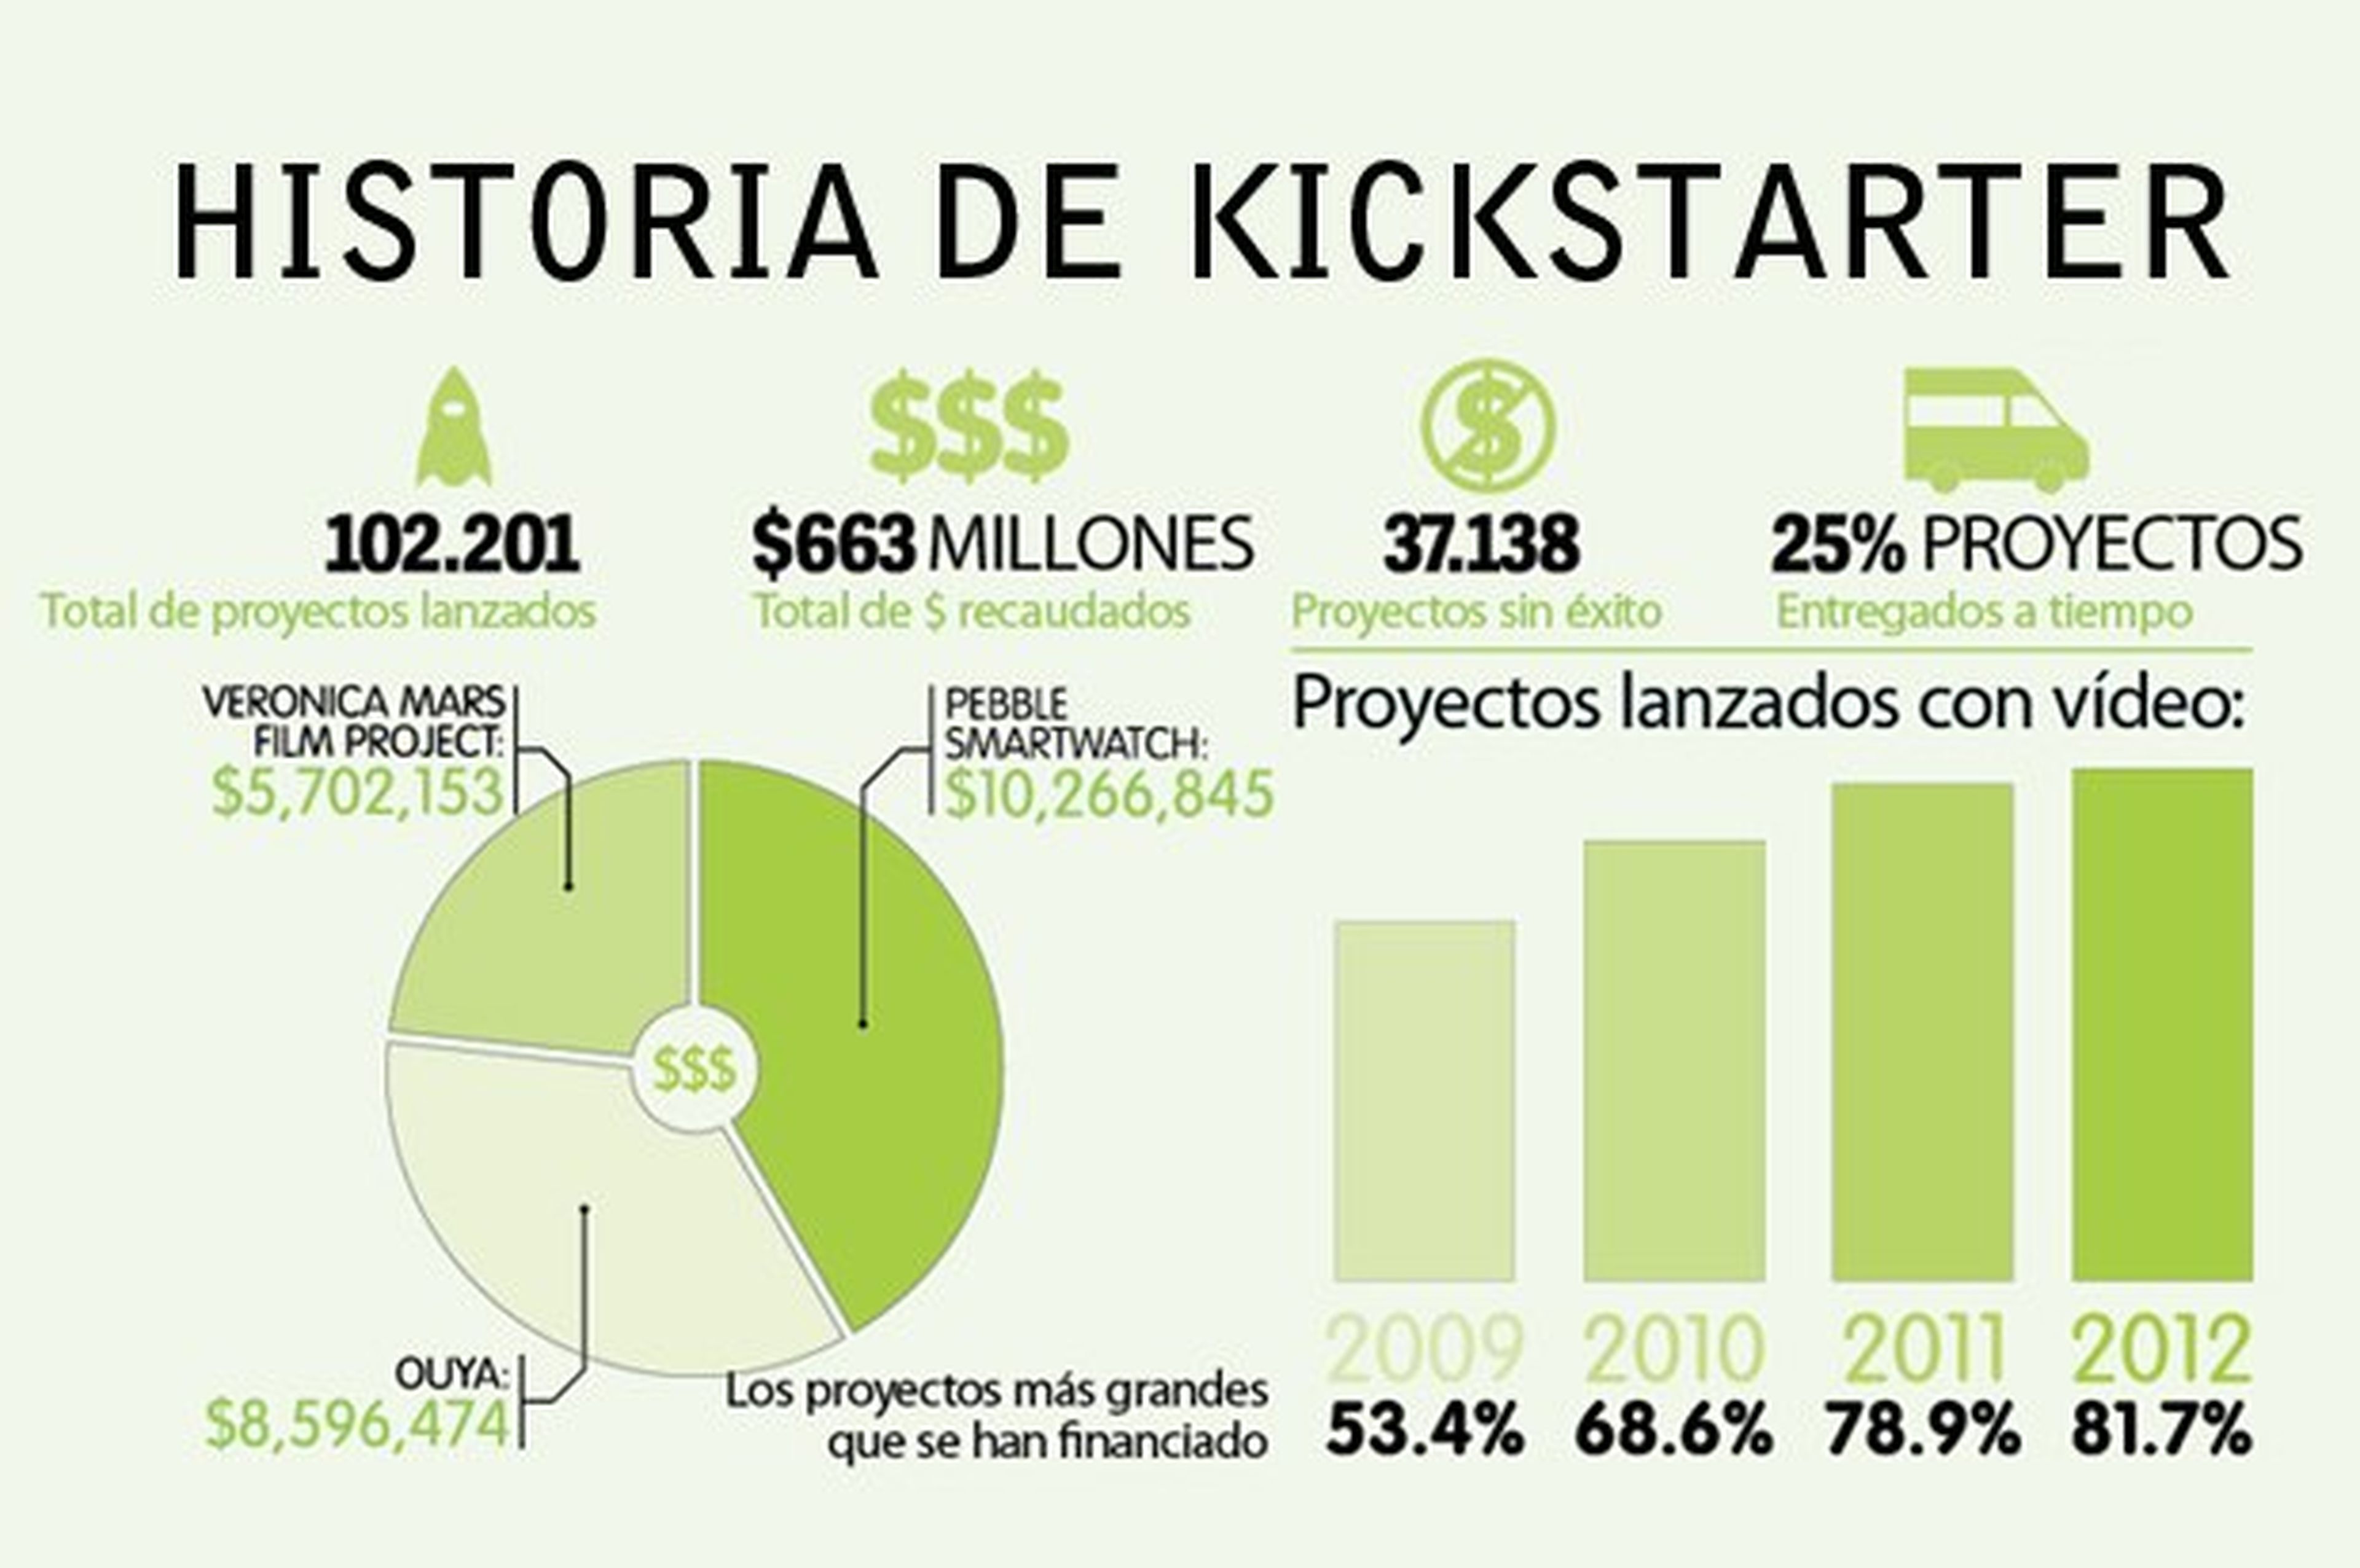 Guía practica de Kickstarter para campañas de Crowdfunding (ingles)